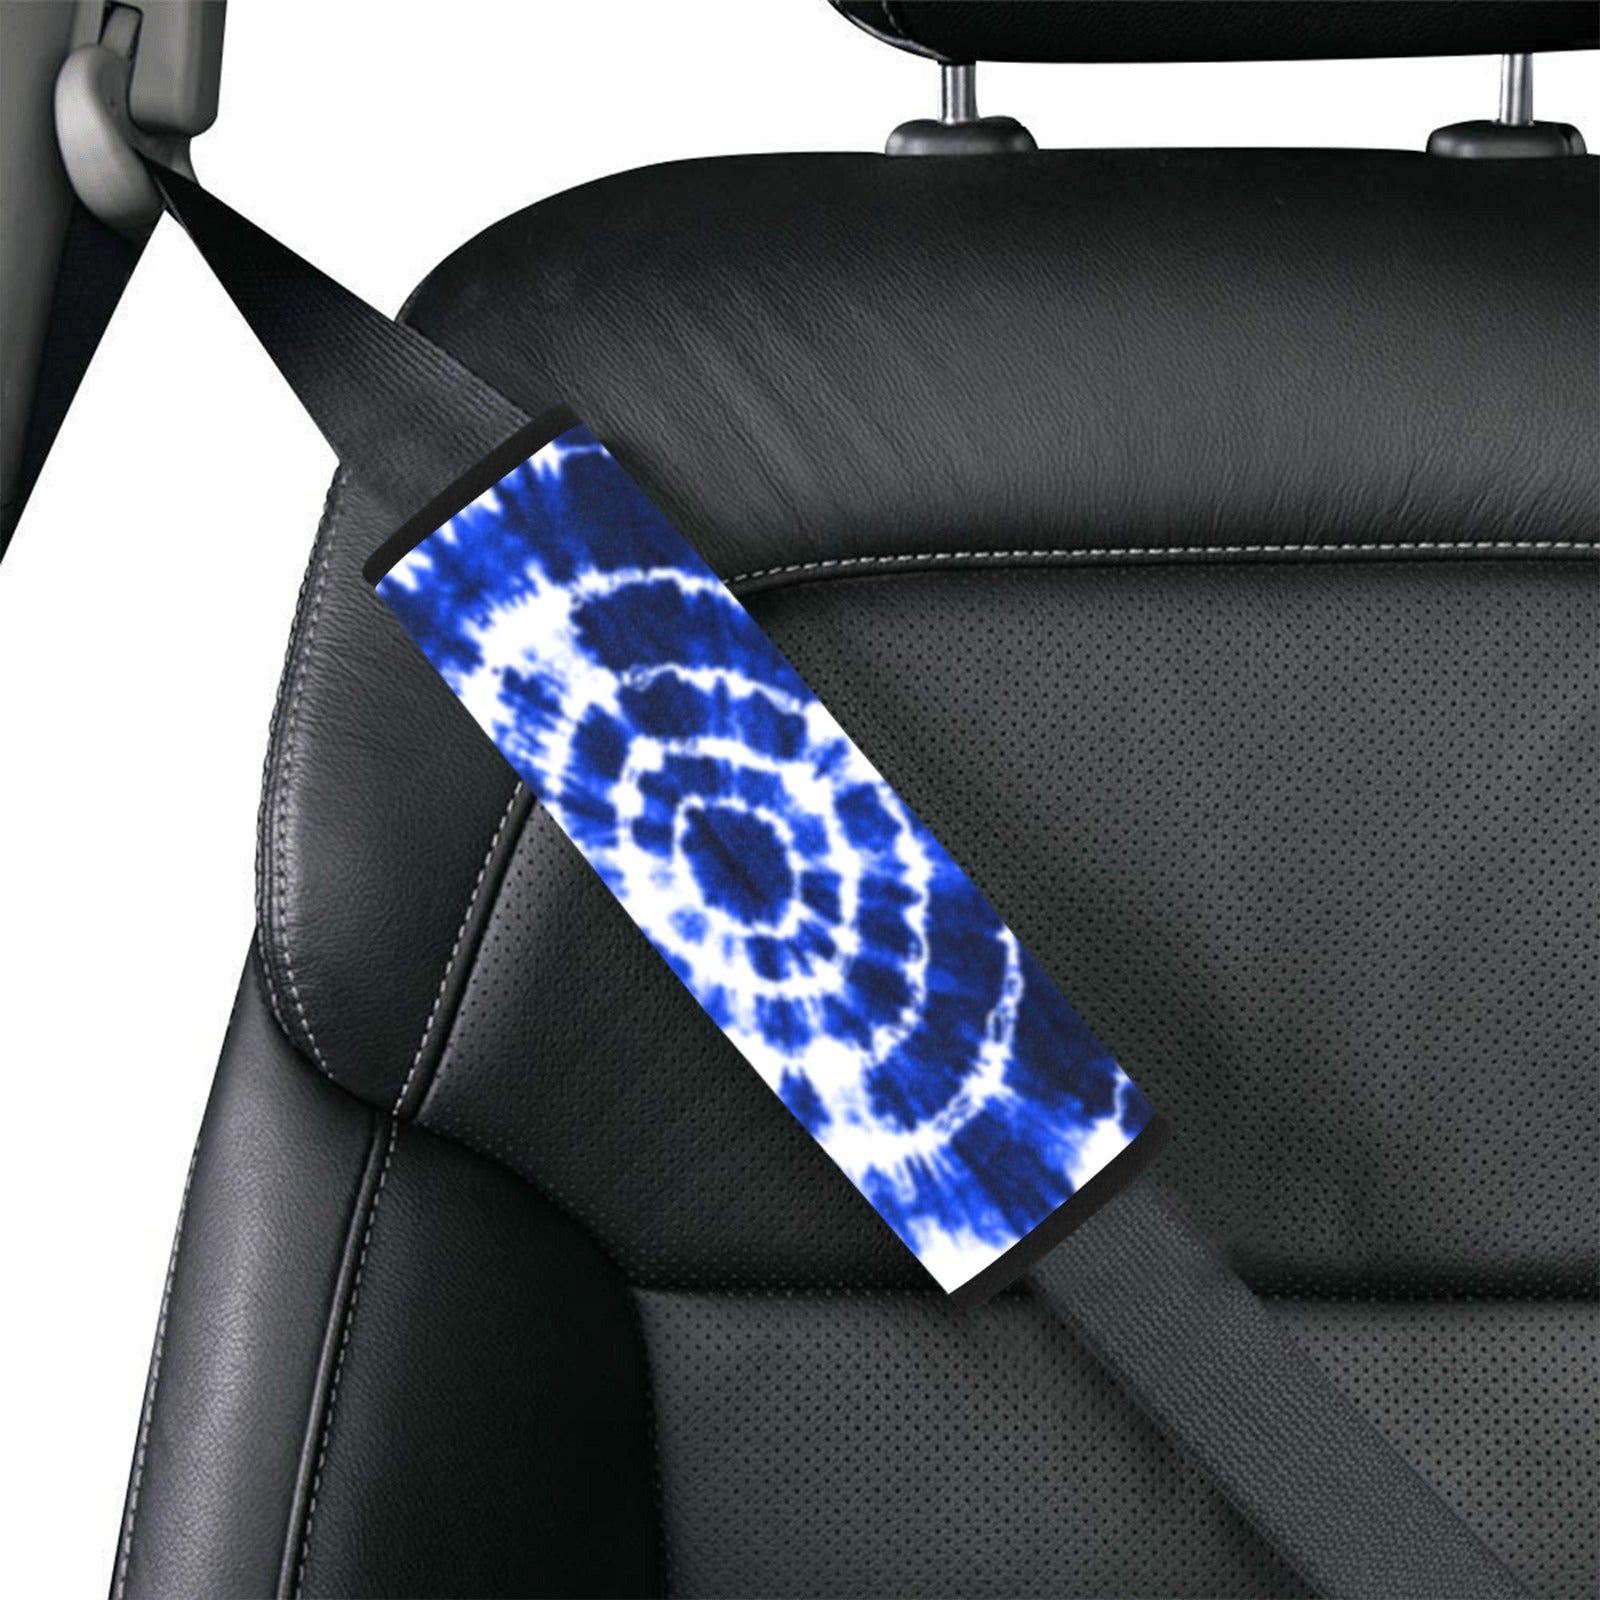 Blue Shibori Tie Dye Seat Belt Cover 7" x 8.5"